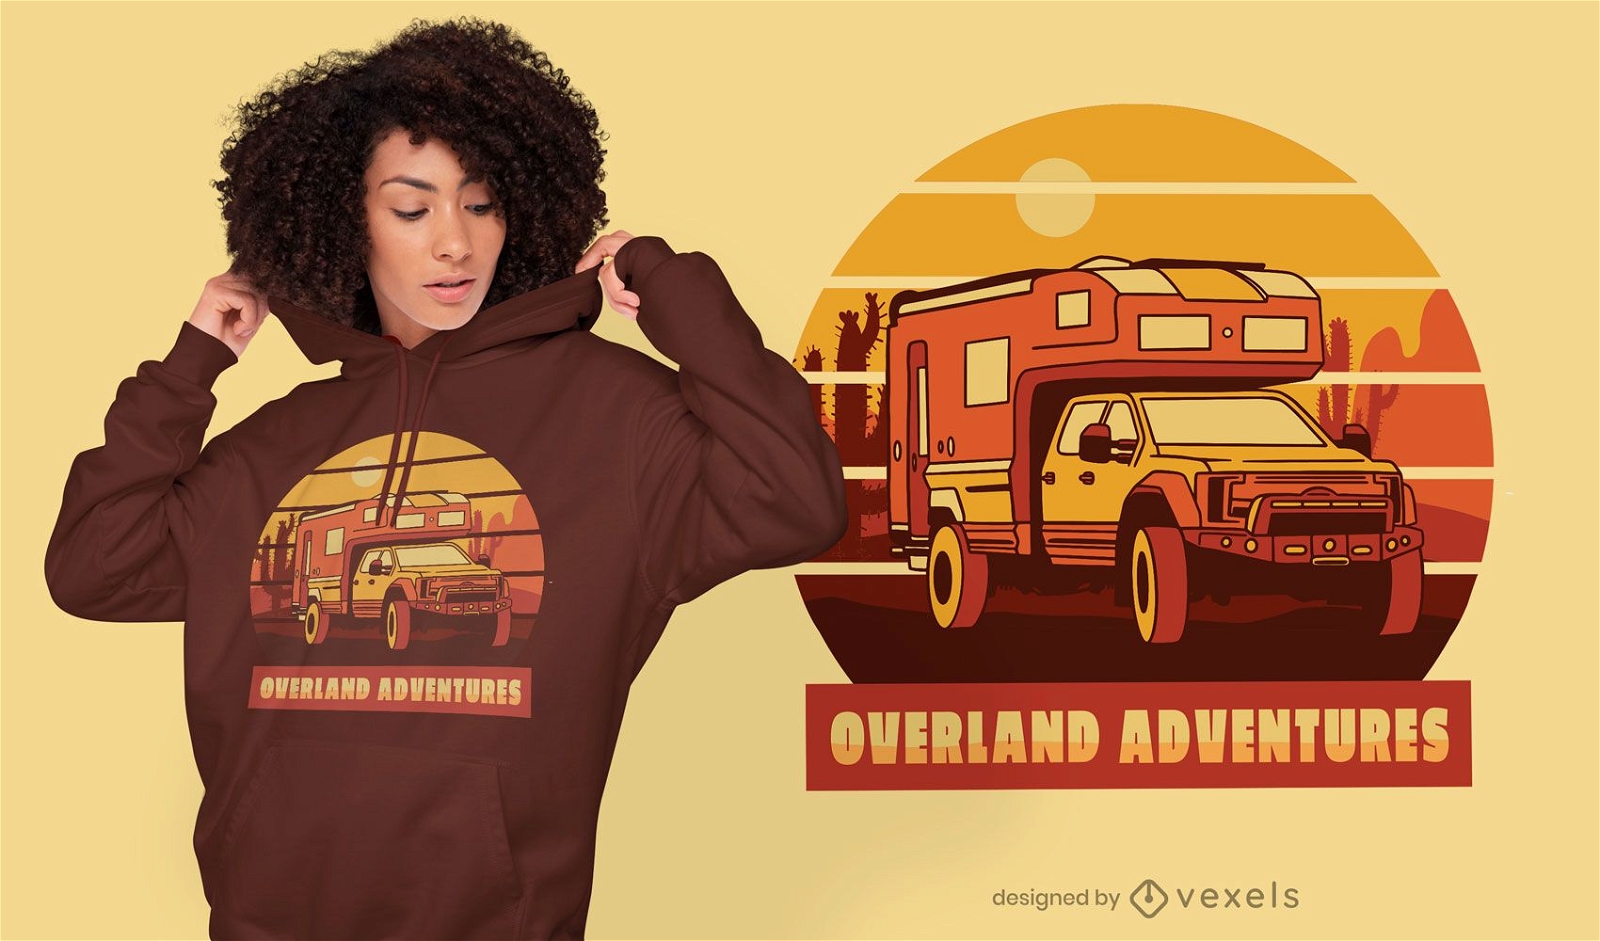 Diseño de camiseta con cita de viaje de aventura.